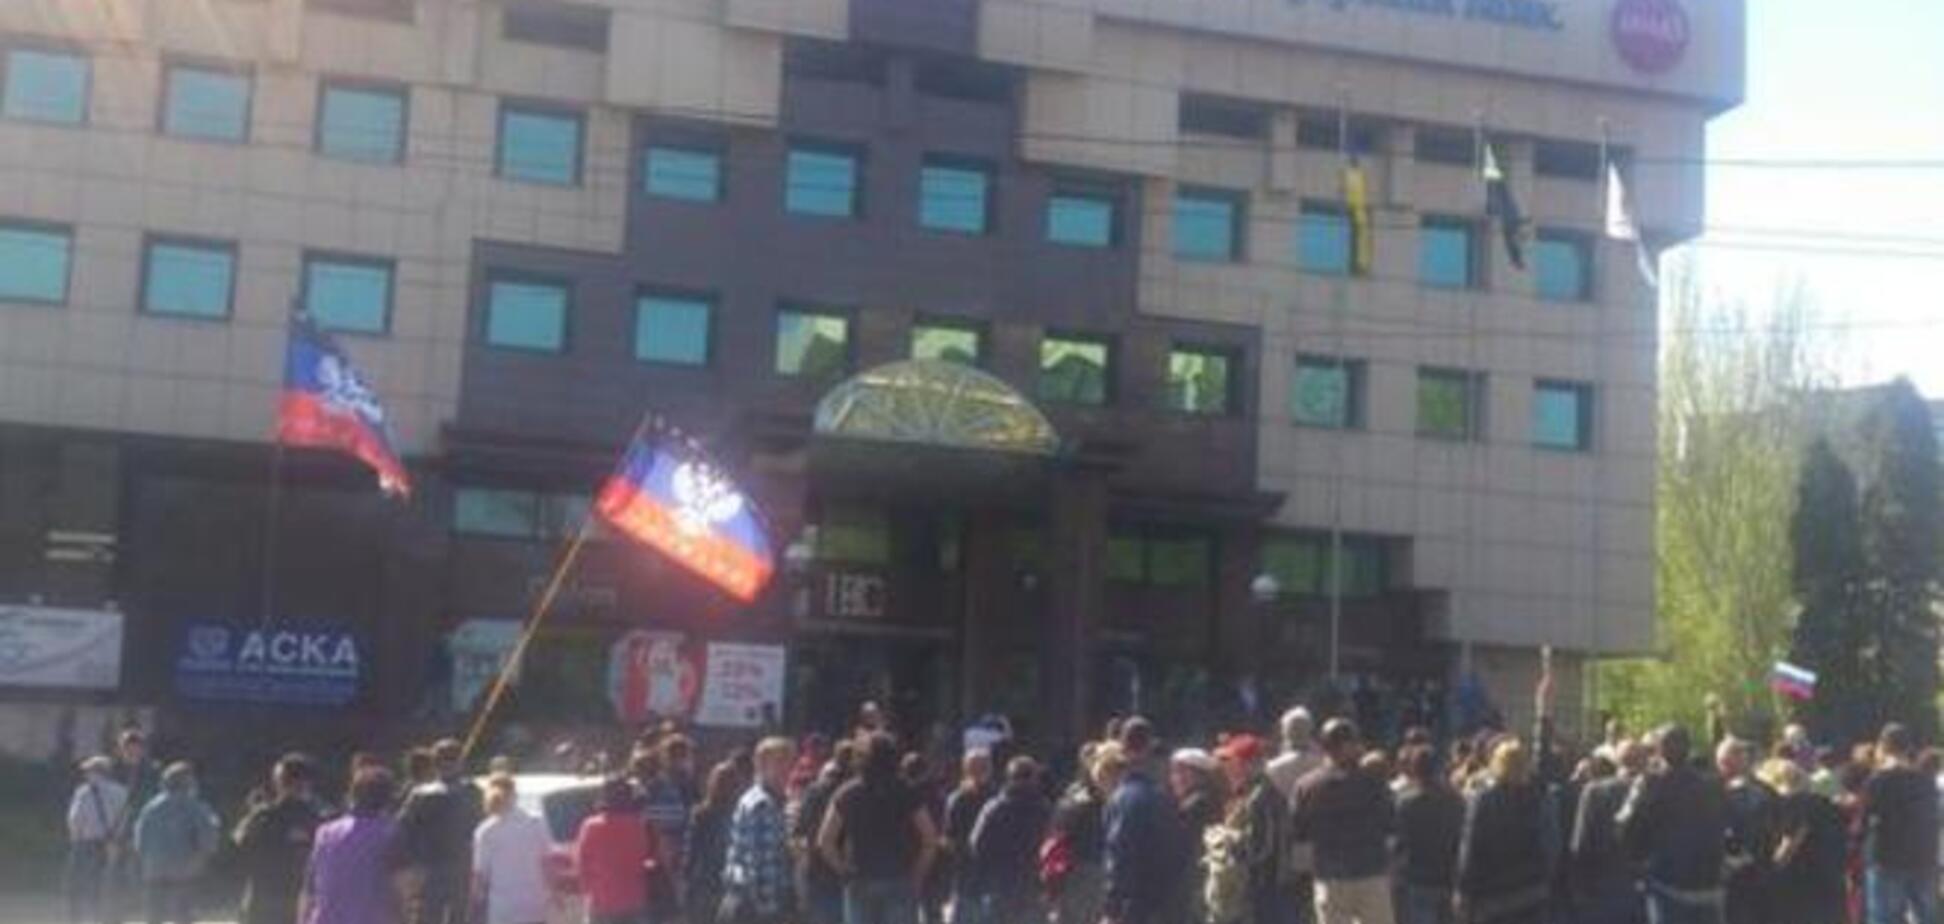 Прихильники терористів підняли над будівлею Донецької телерадіокомпанії свій прапор